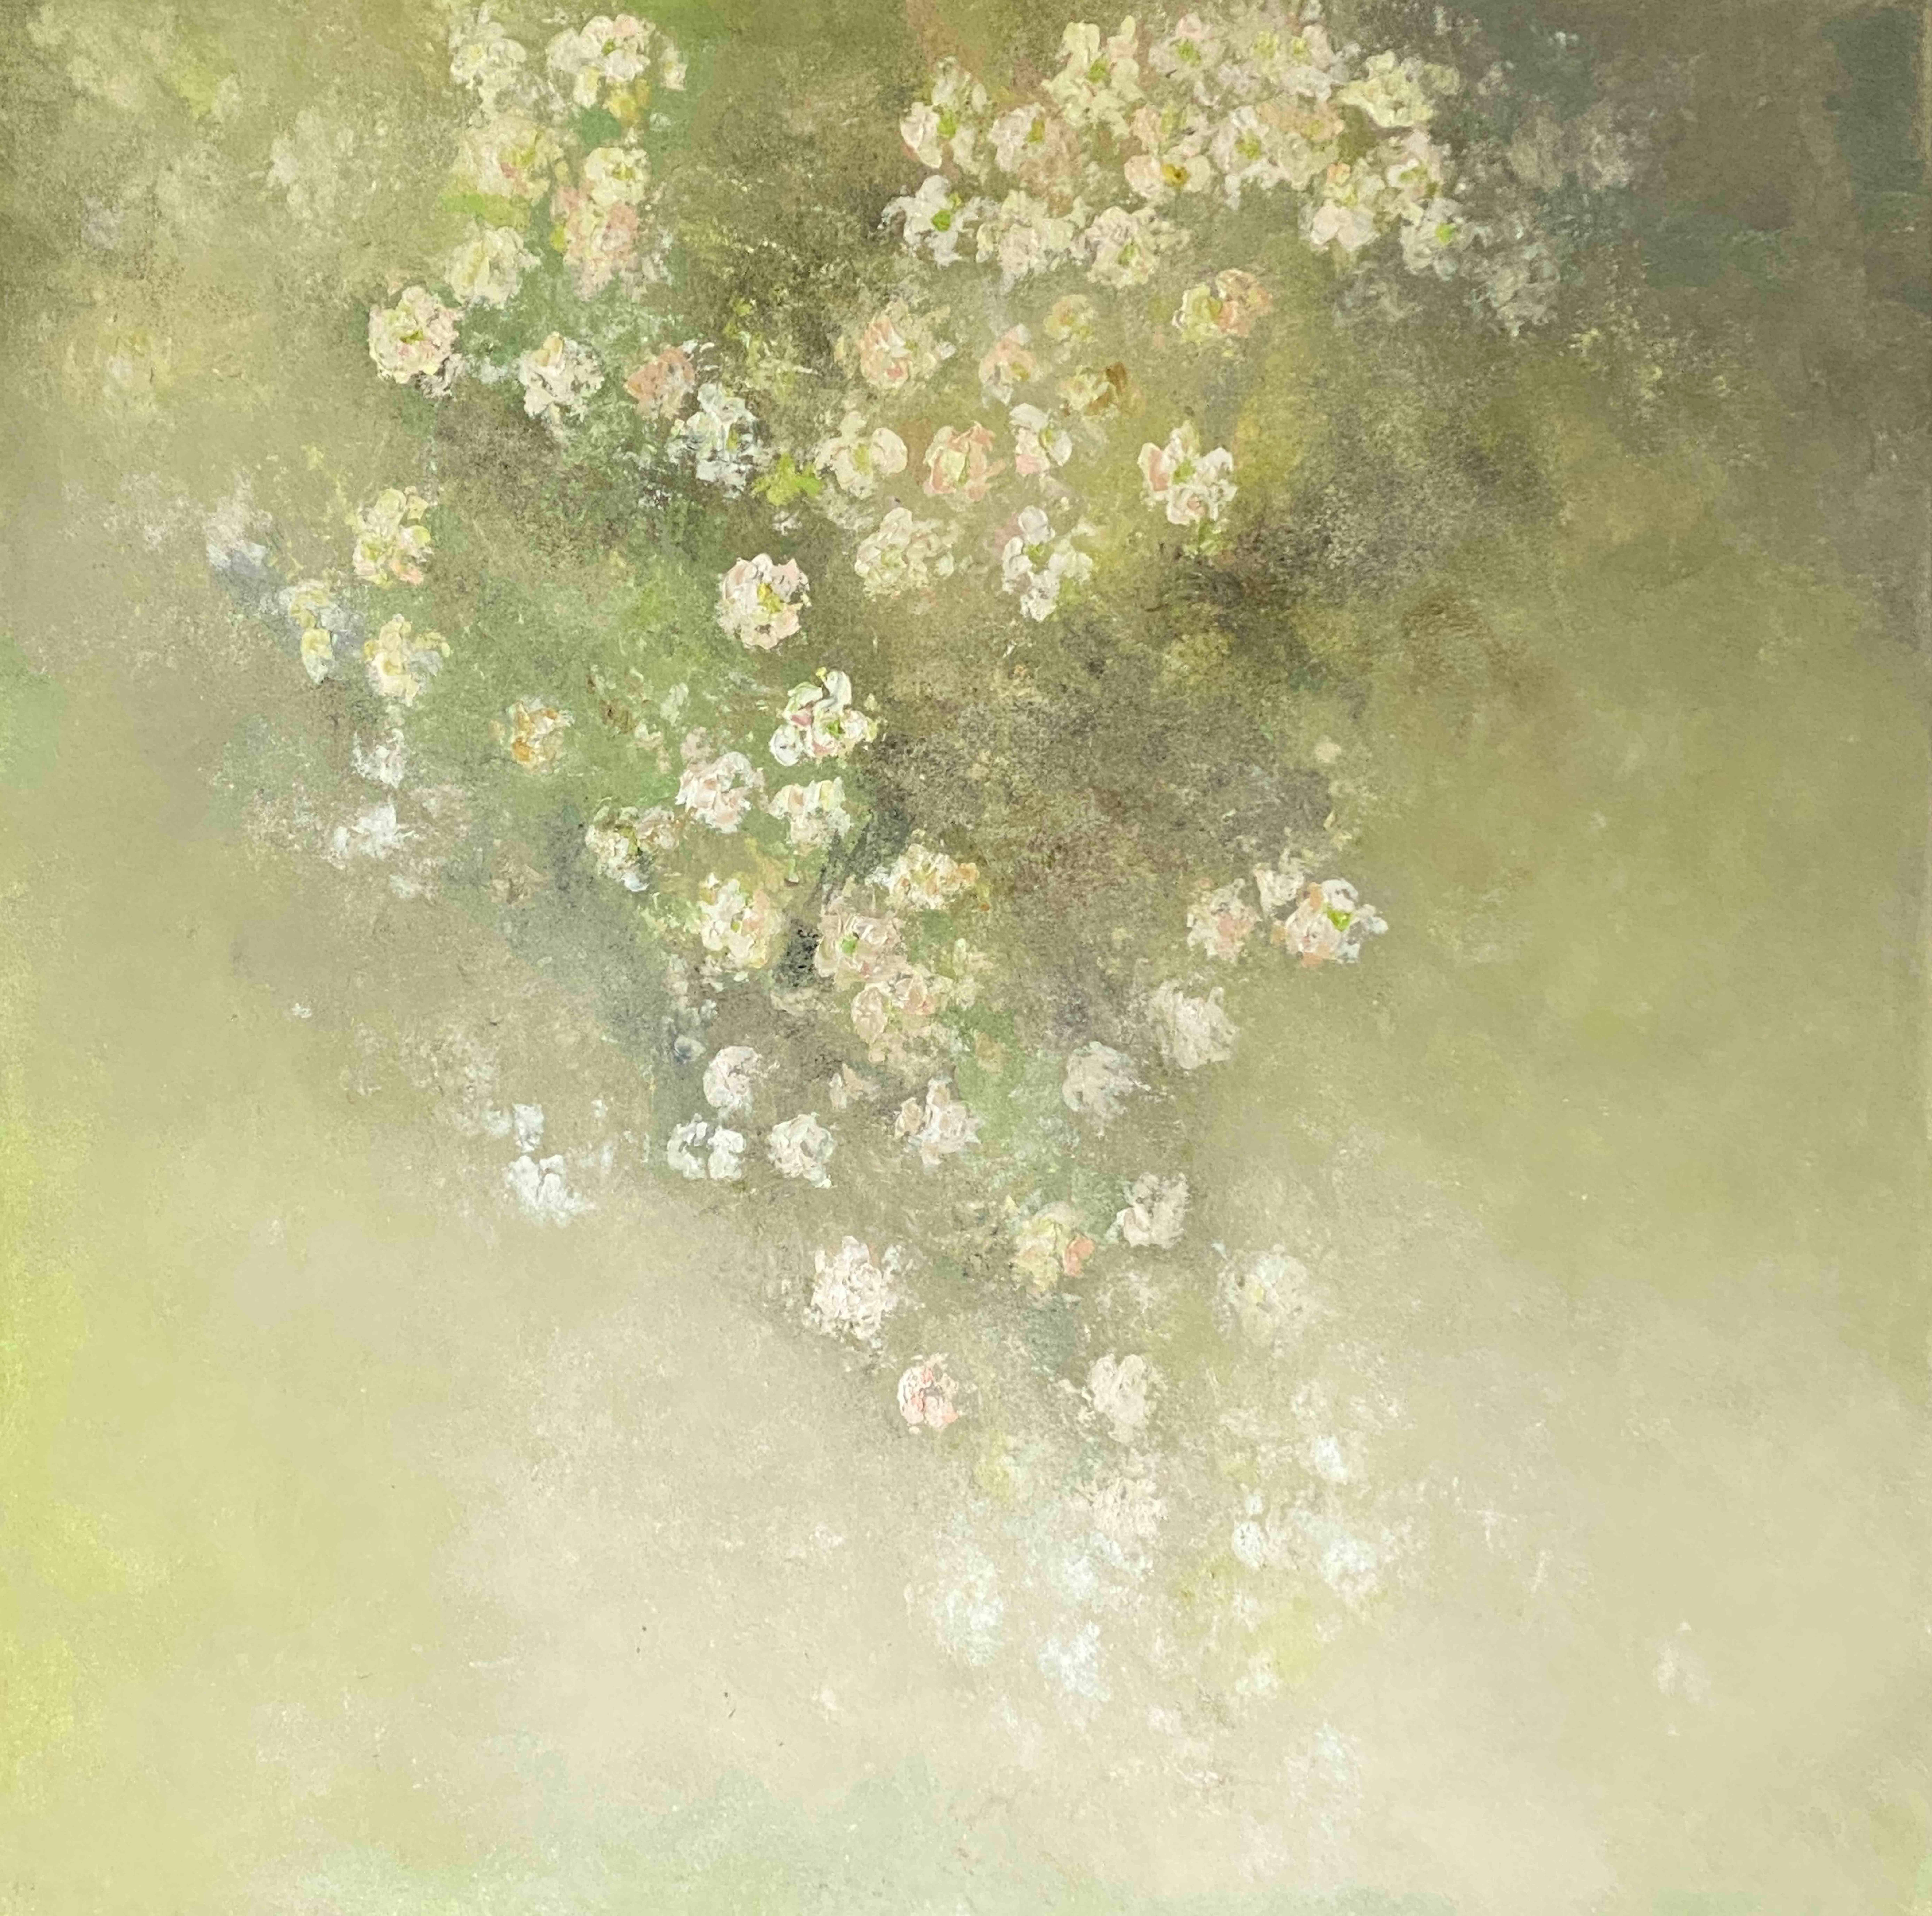 Wietzie Abstract Painting – Der Frühling beginnt